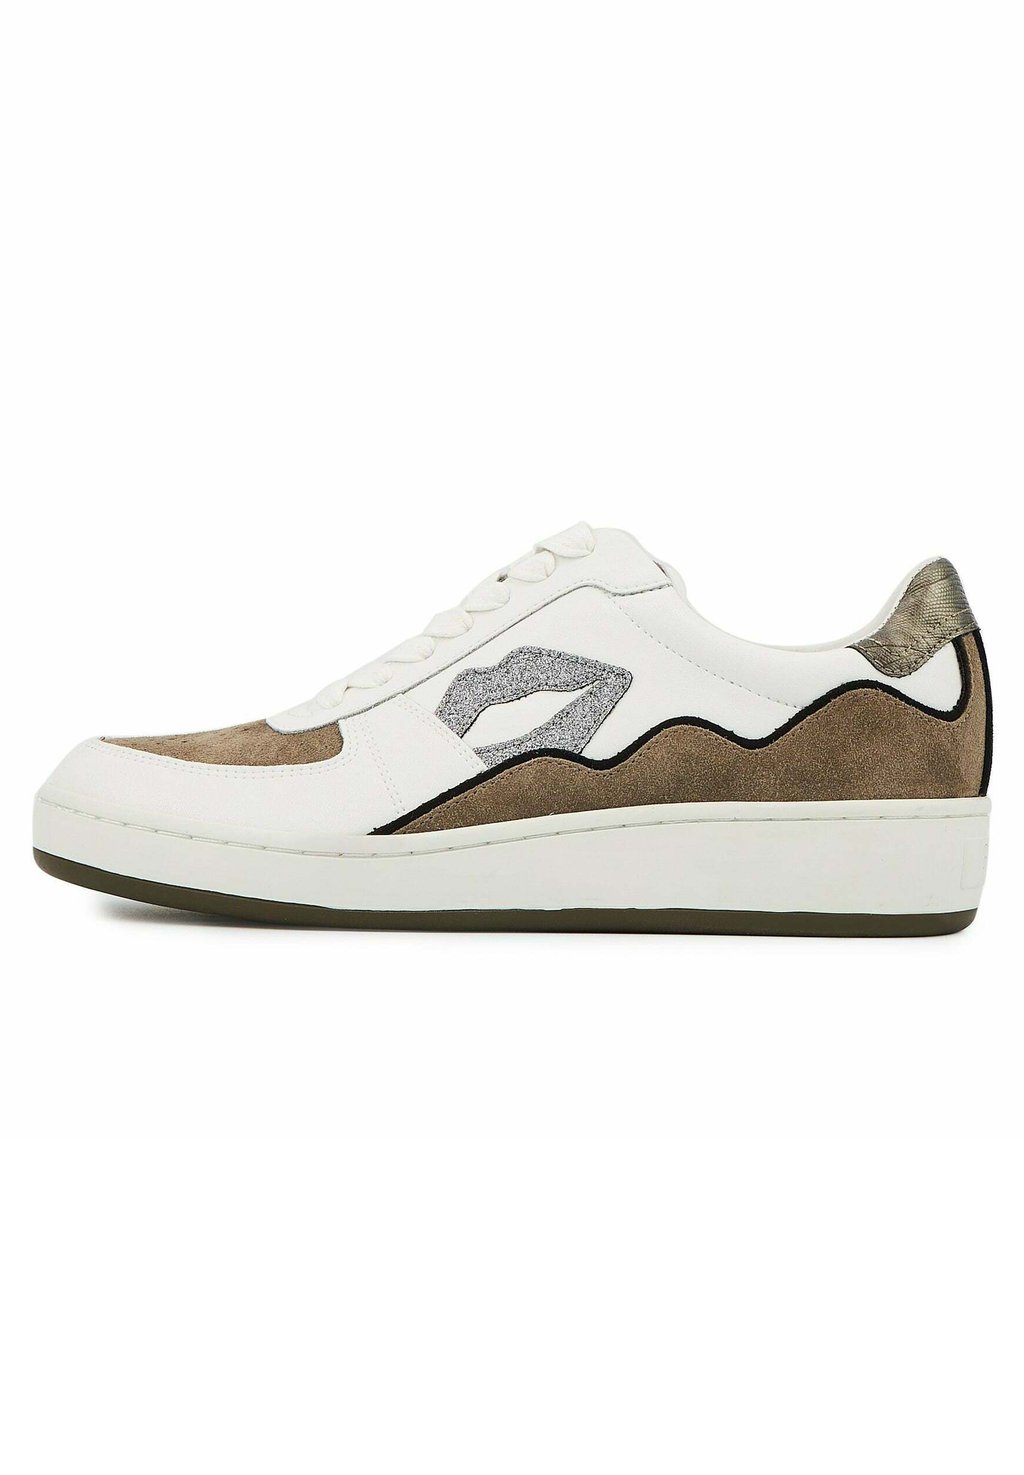 Кроссовки Bons Baisers de Paname, белый / коричневый туфли для ходьбы first mini simone monsieur madame costaud bons baisers de paname цвет blanc